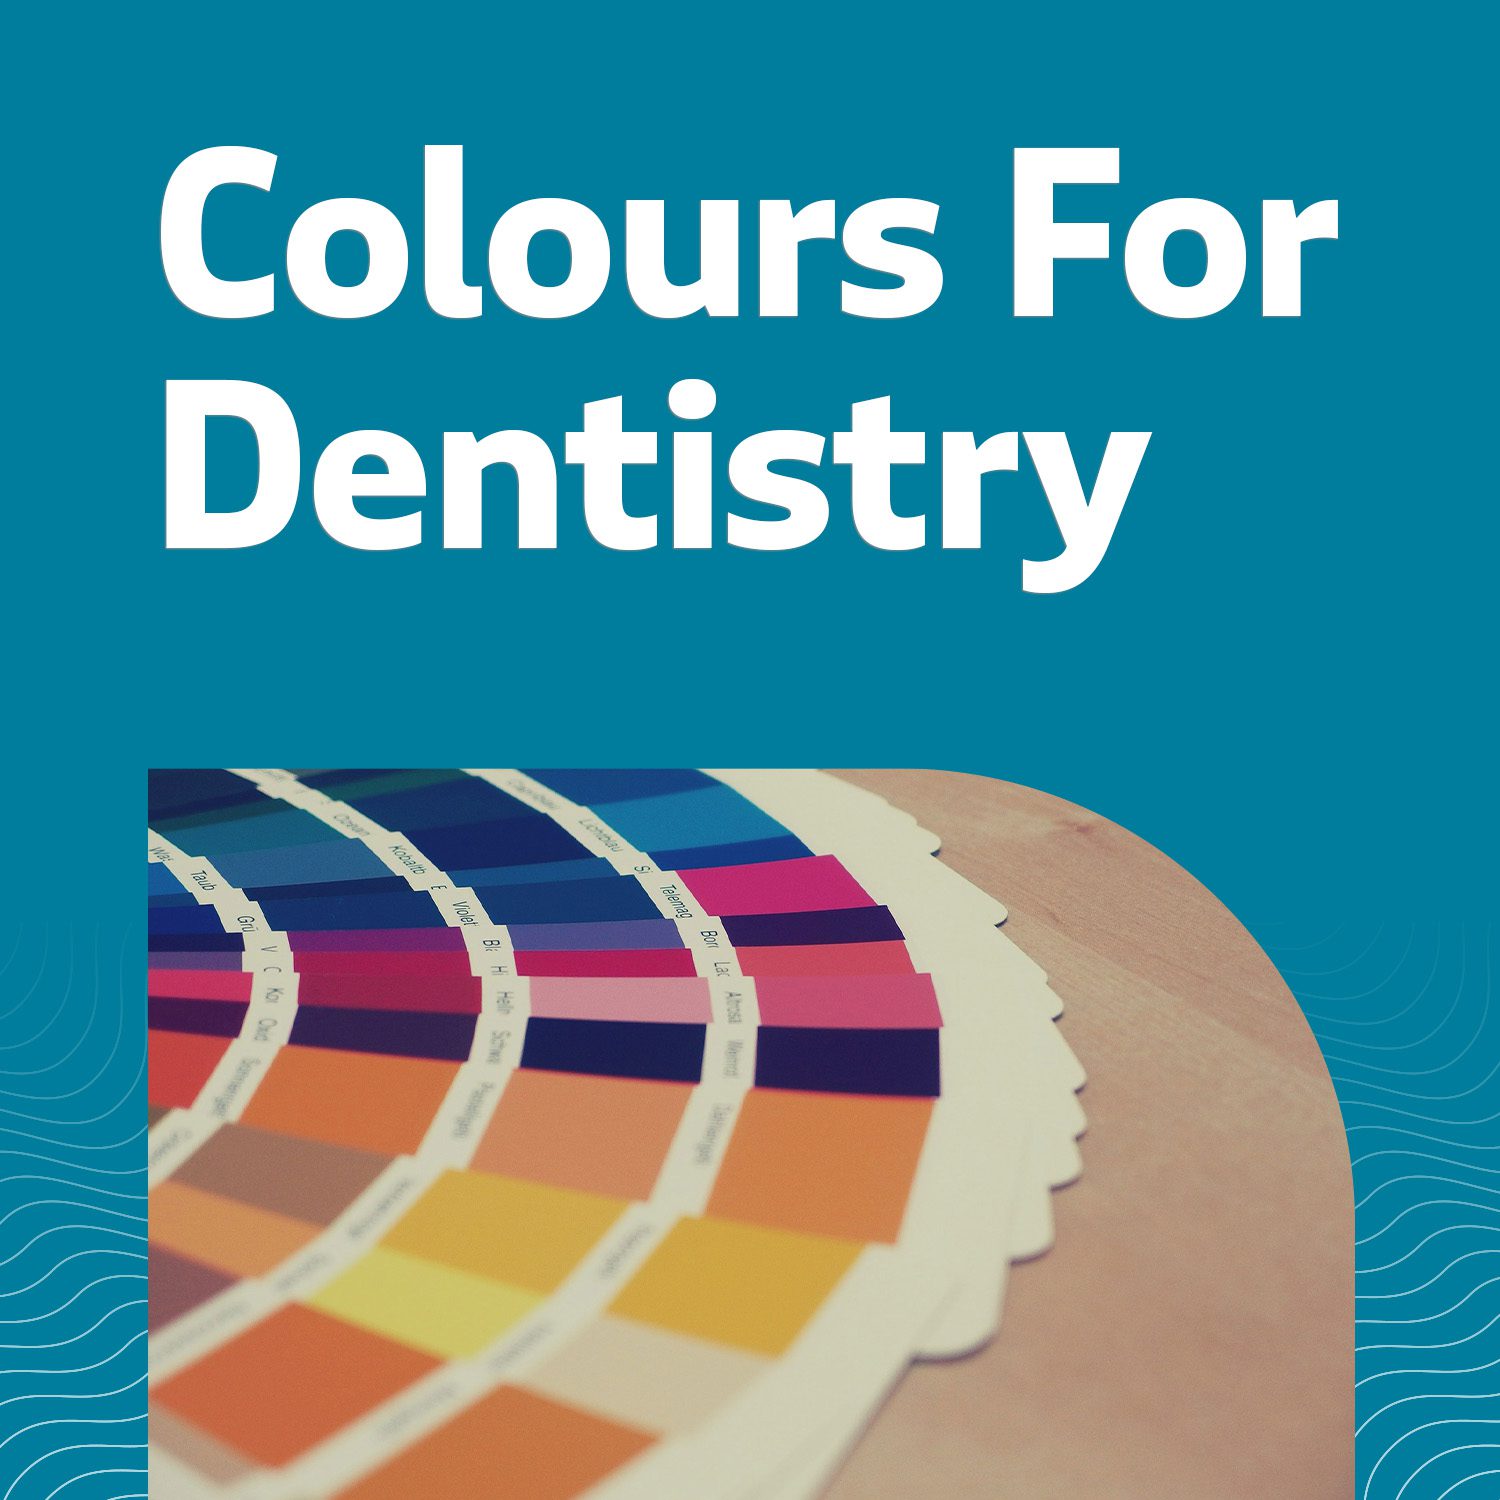 Choosing Colours for Dentist Brand